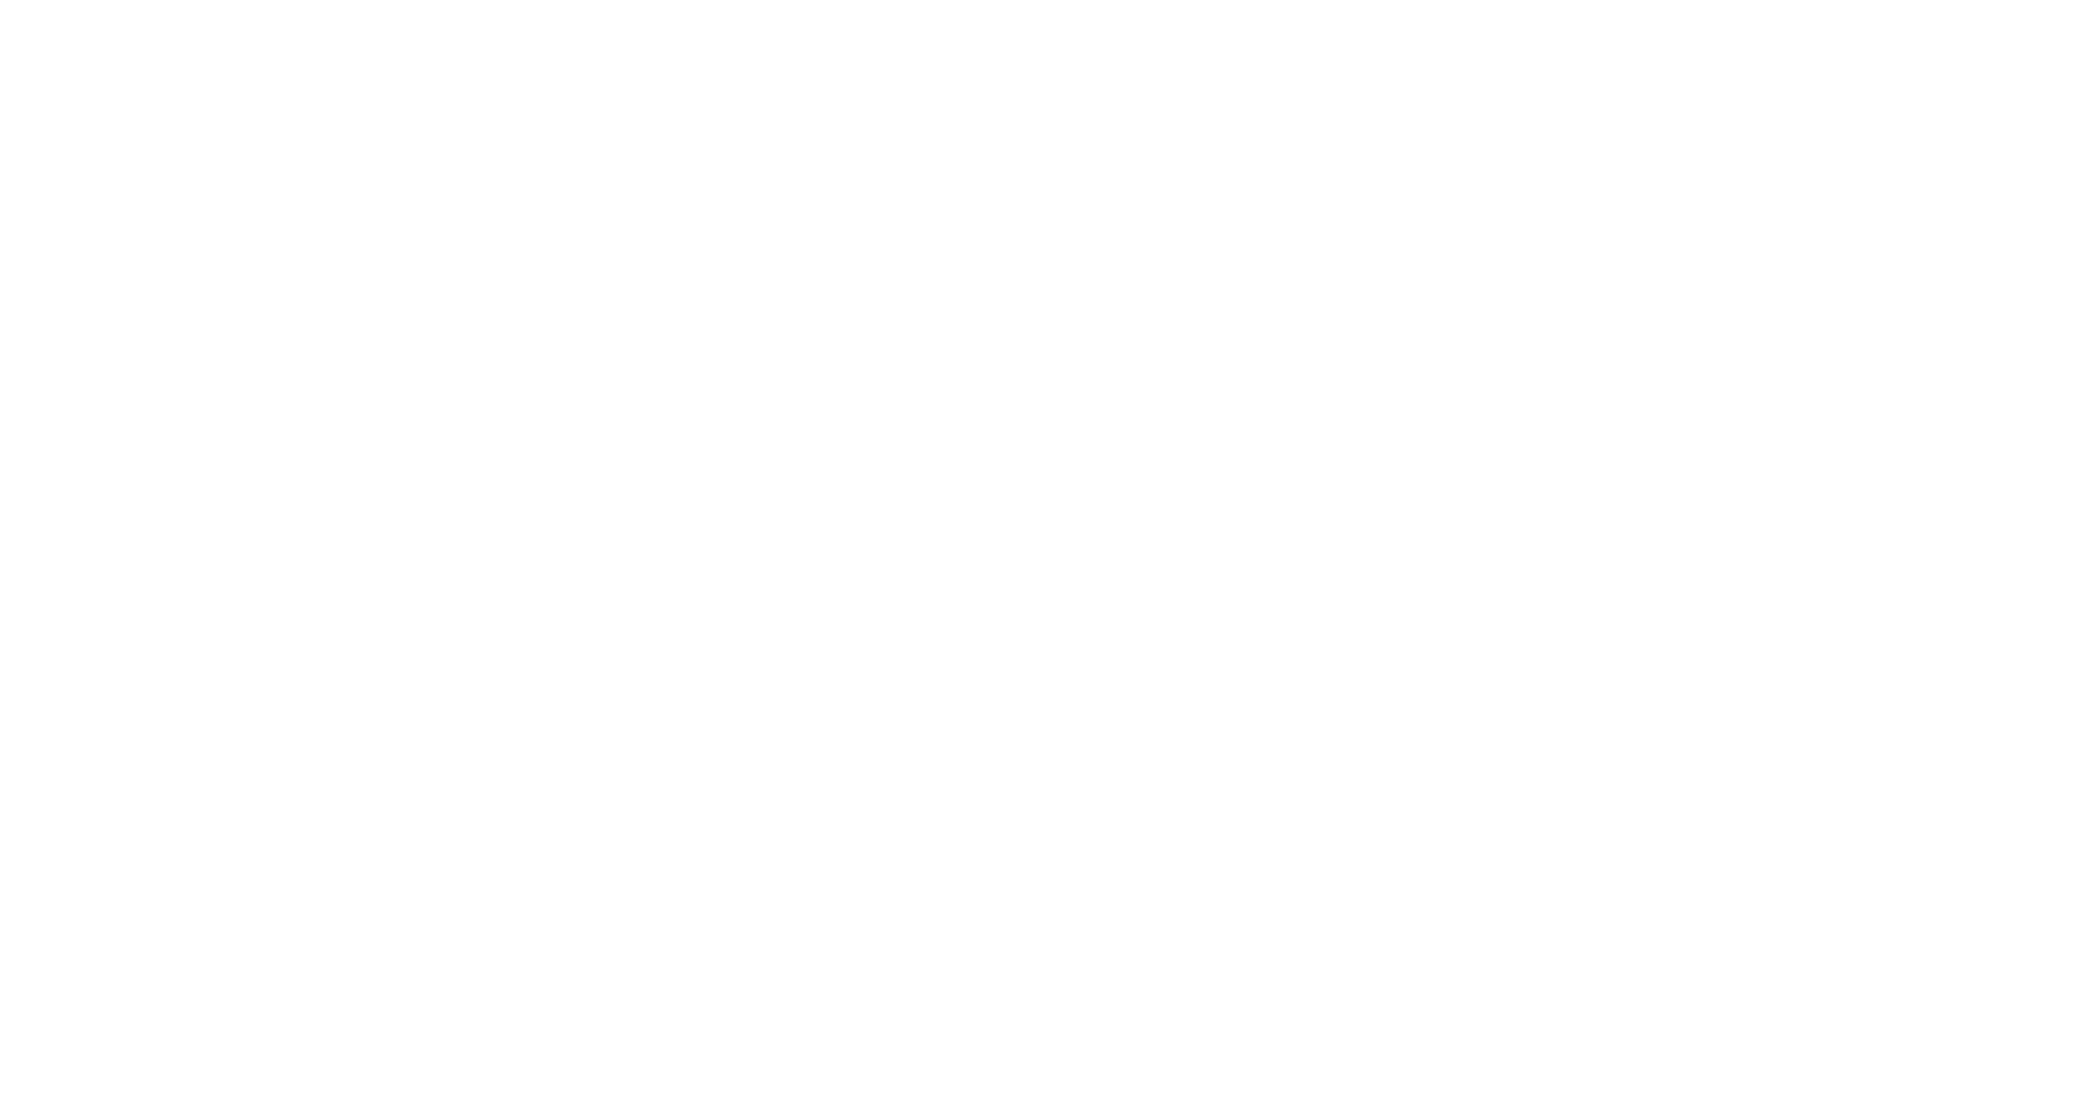 CopenhagenTantraFestival_Logotype_Vertical_White